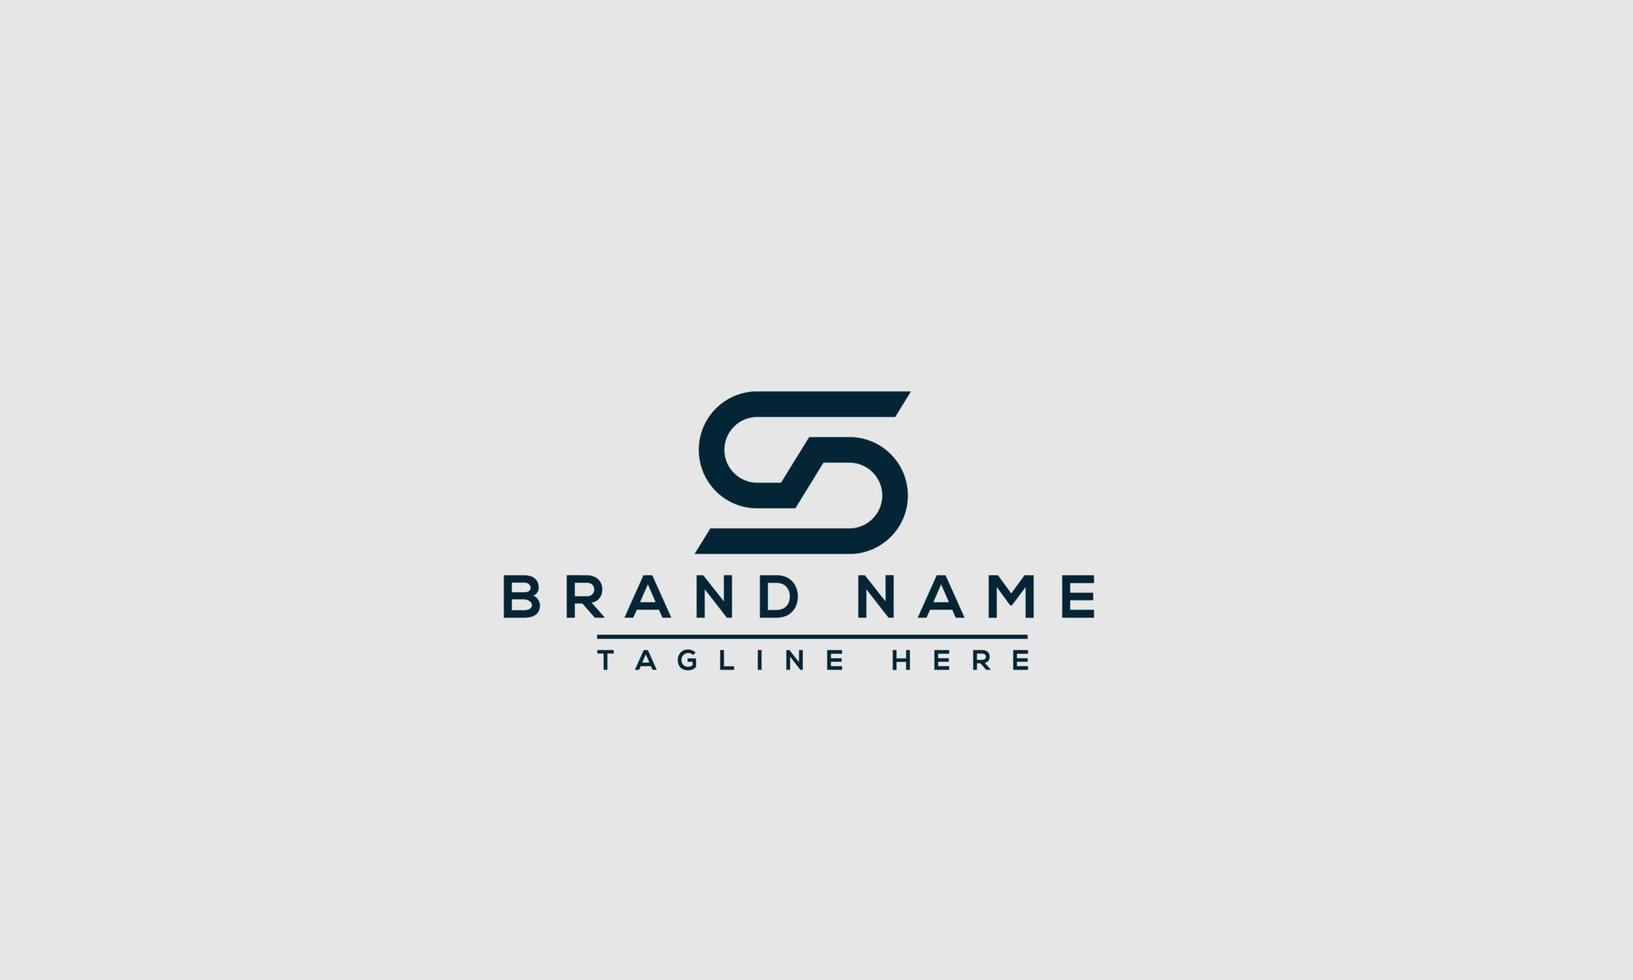 elemento di branding grafico vettoriale del modello di progettazione del logo SD.